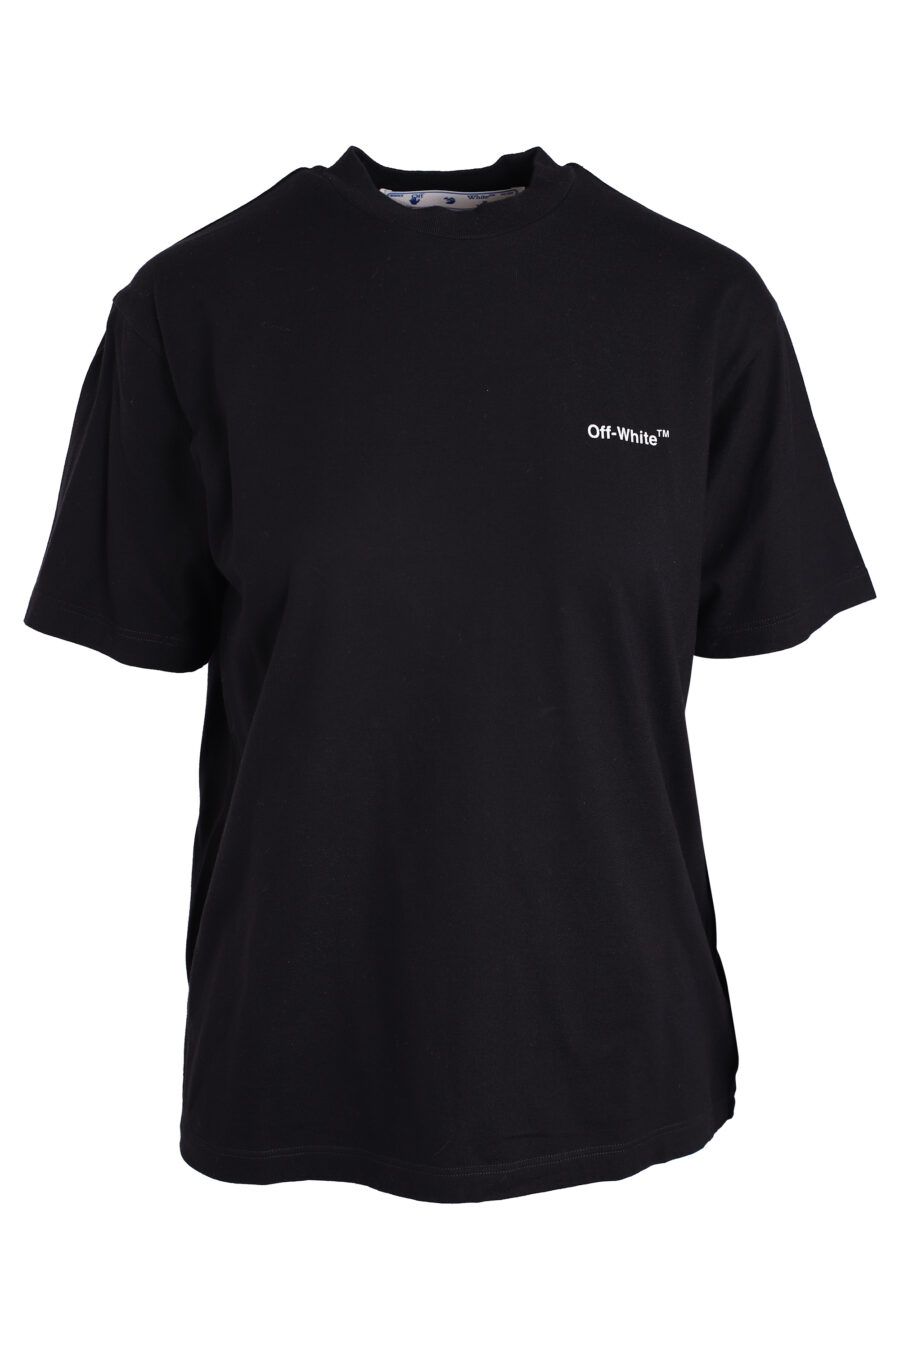 Black T-shirt with logo "Diagonal regular" - IMG 3383